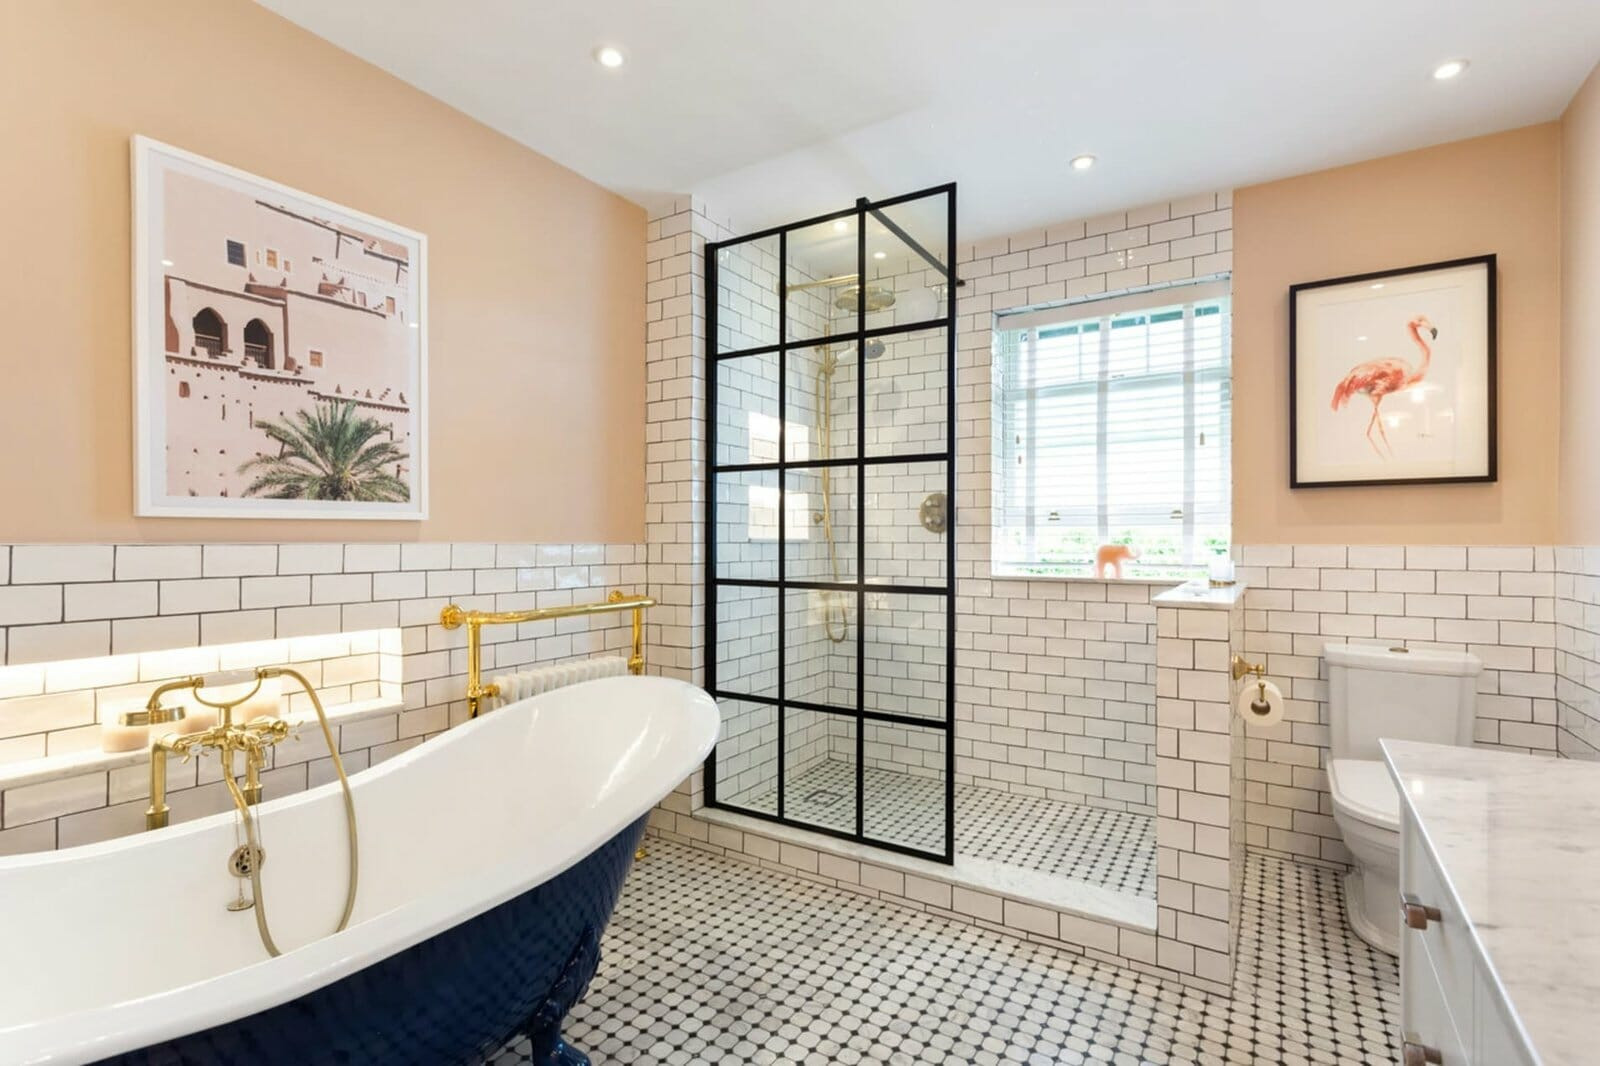 Bathroom Tile Ideas You